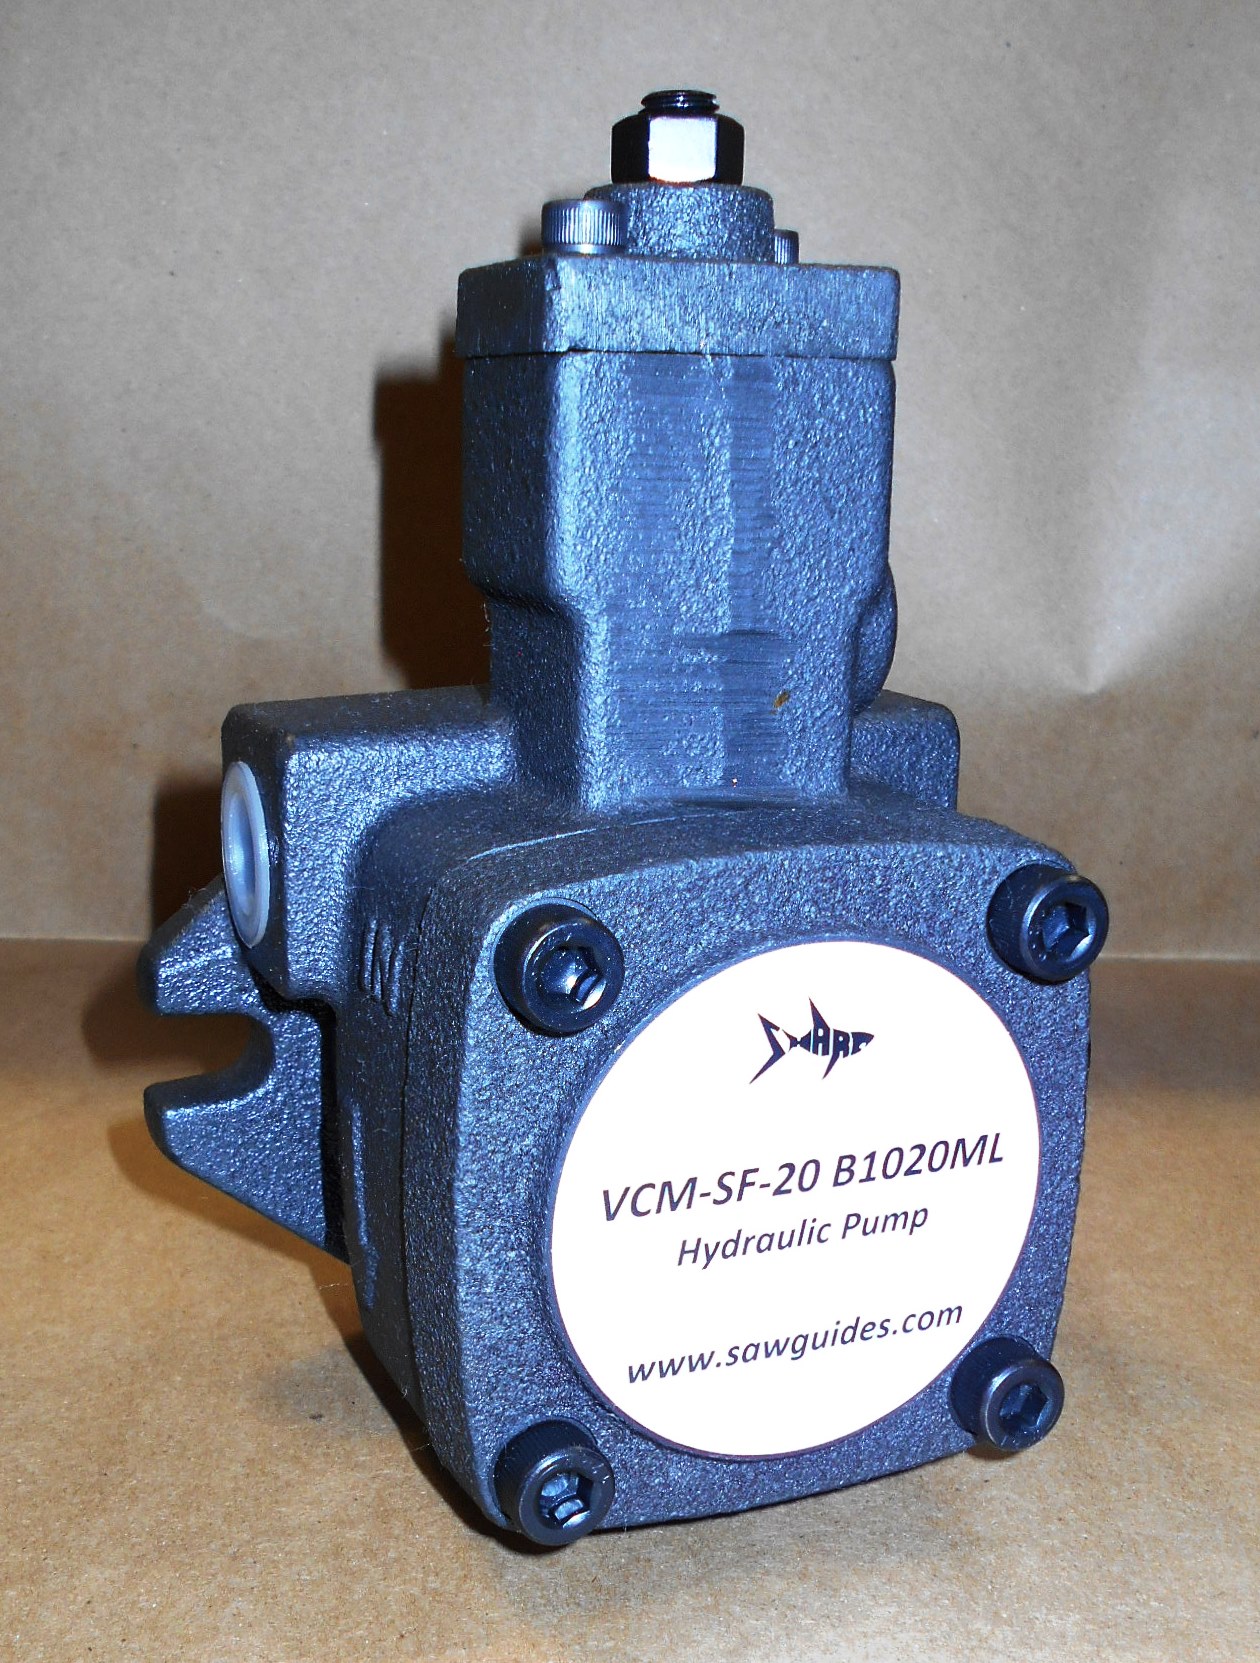 VCM-SF-20 B1020ML